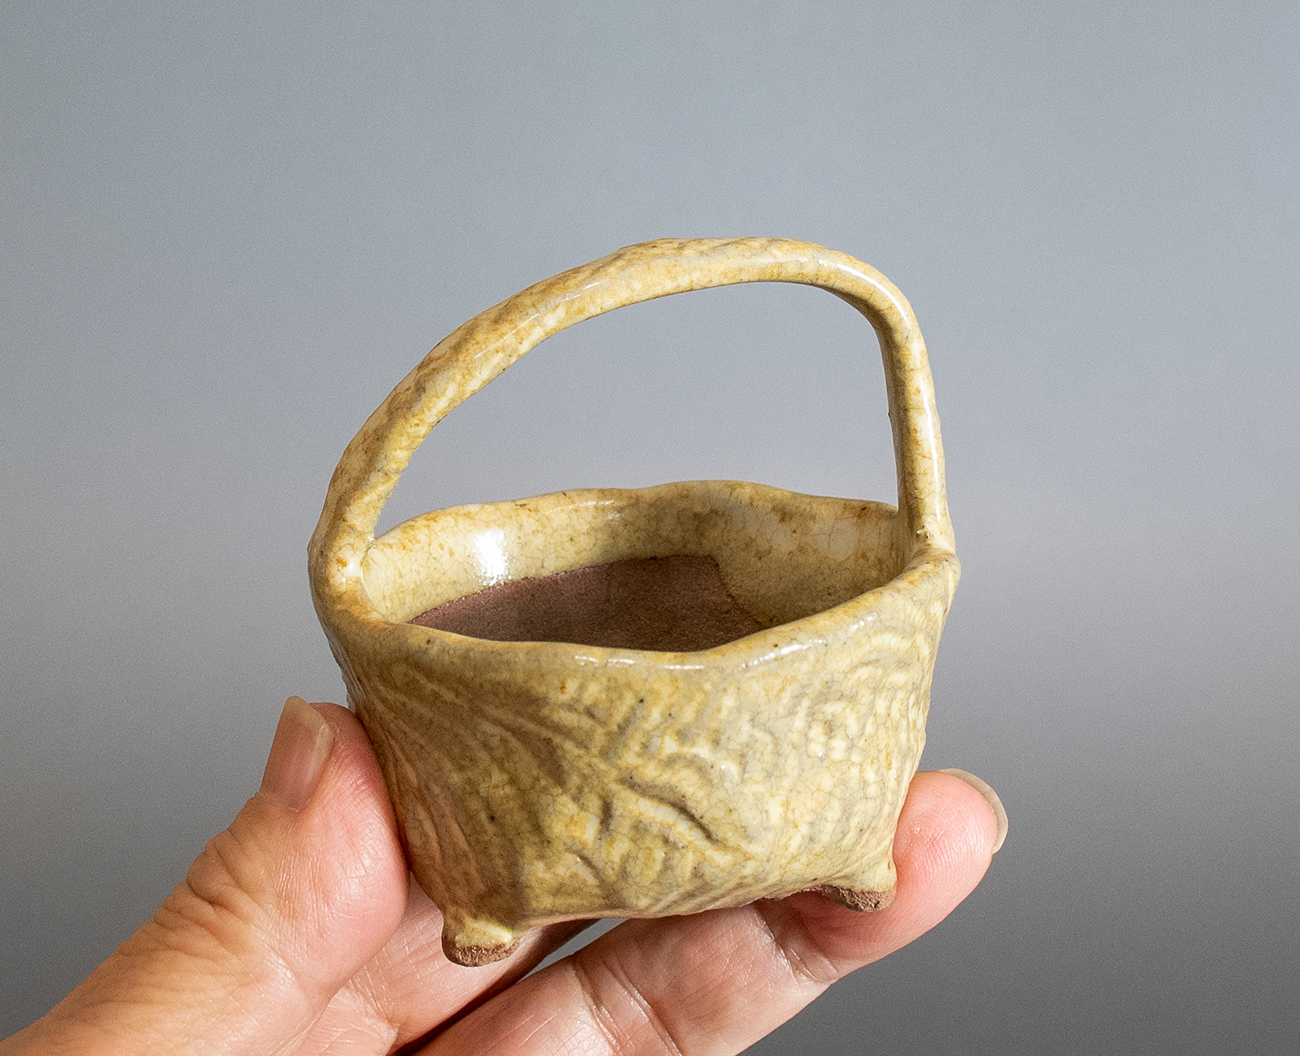 うのふ釉手付き盆栽鉢（Unofu glaze bonsai pot）p1175-4・Syoko Kunii bonsai pot of Best Selection｜國井正子盆栽鉢作家のベストセレクション